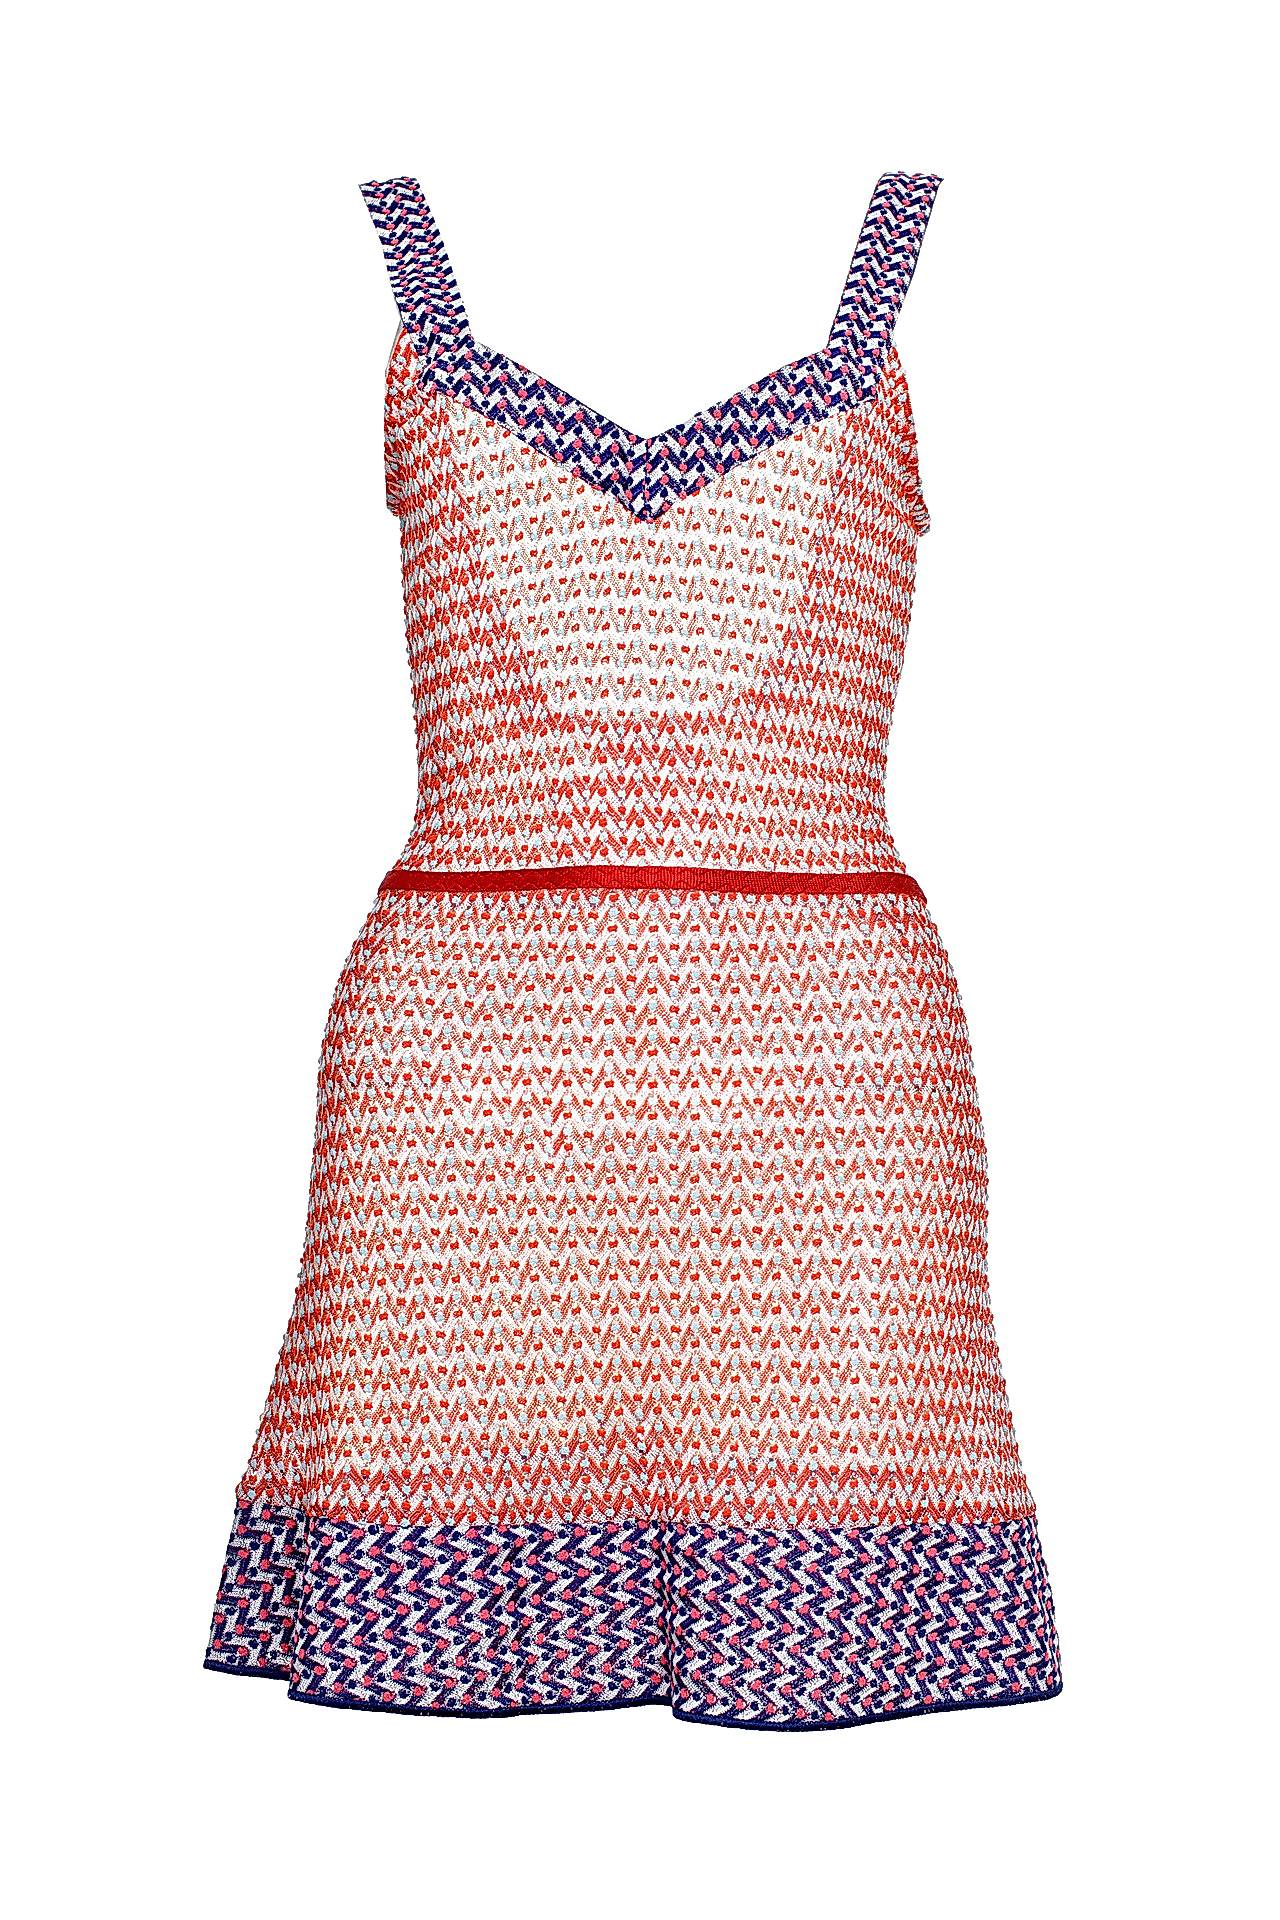 Одежда женская Платье MISSONI (171013/13.1). Купить за 22950 руб.